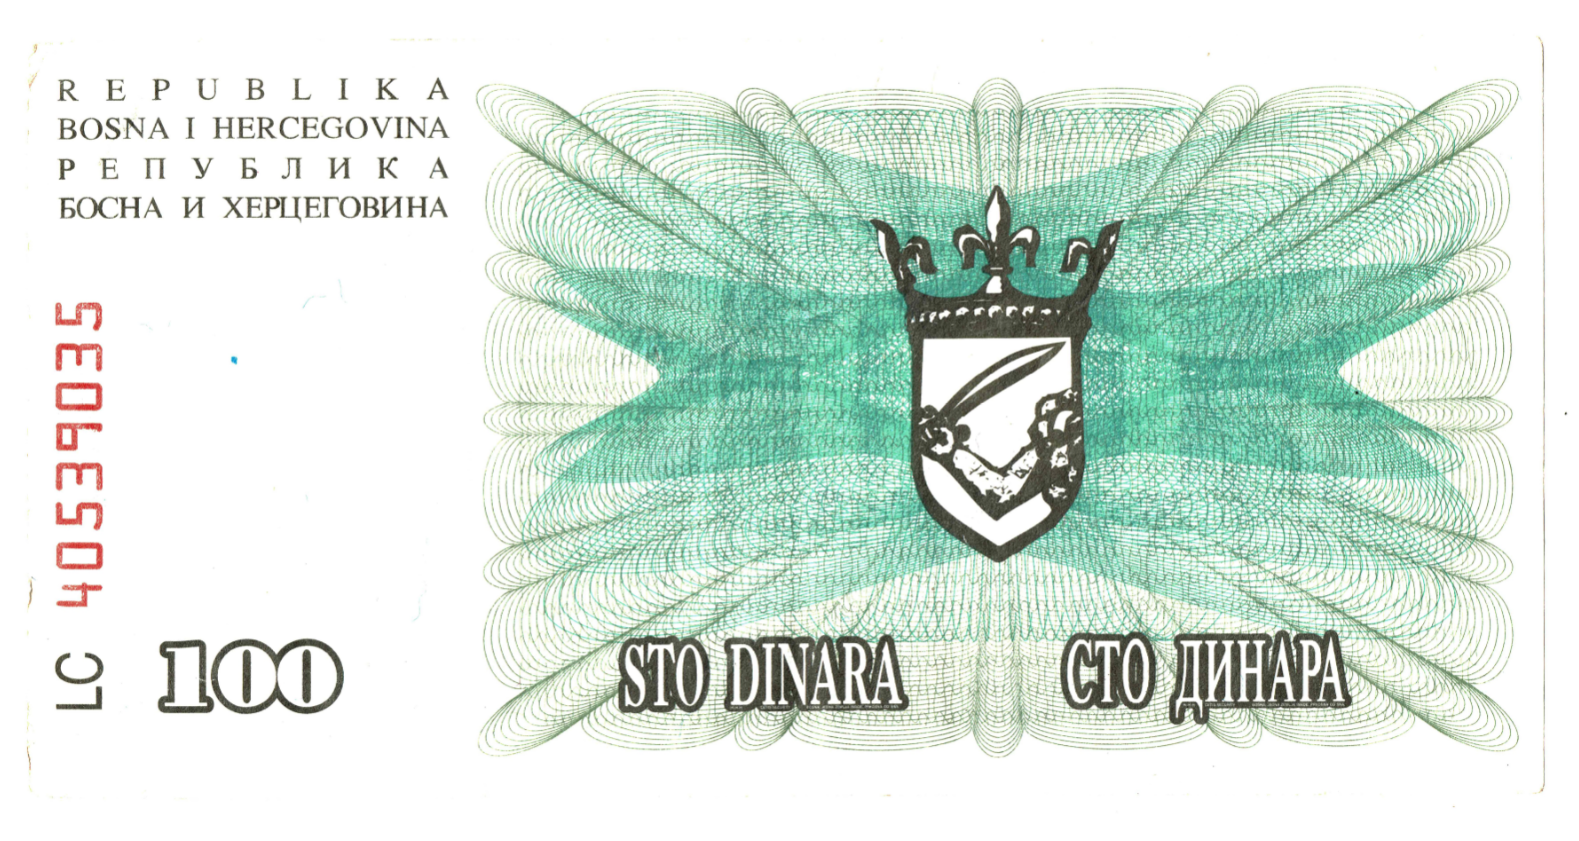 Bosnia and Herzegovina 100 Dinara_000140.png